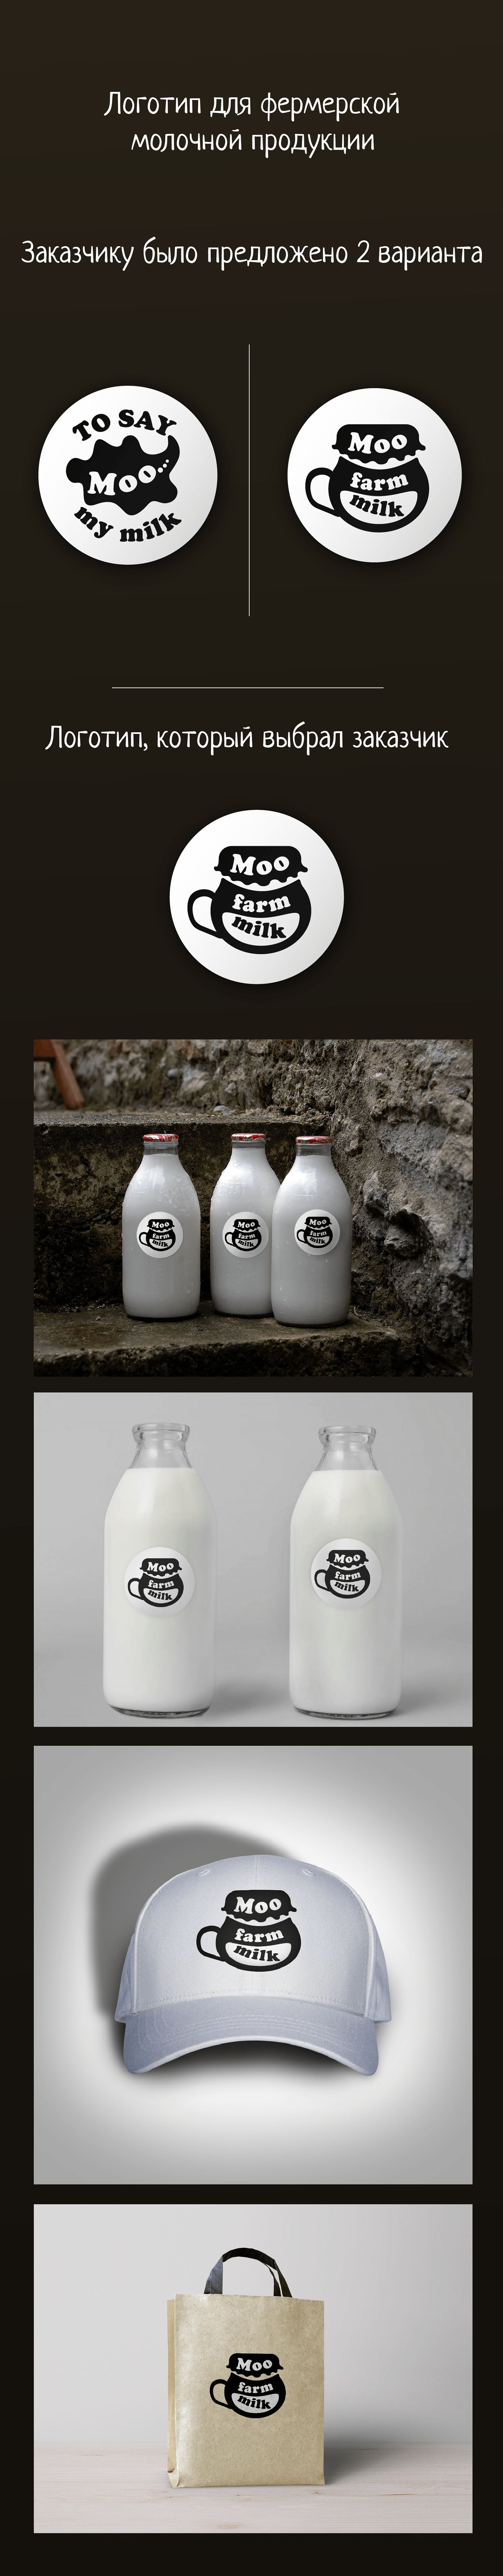 milk здоровое питание молоко натуральные продукты фермерская продукция фермерское хозяйство